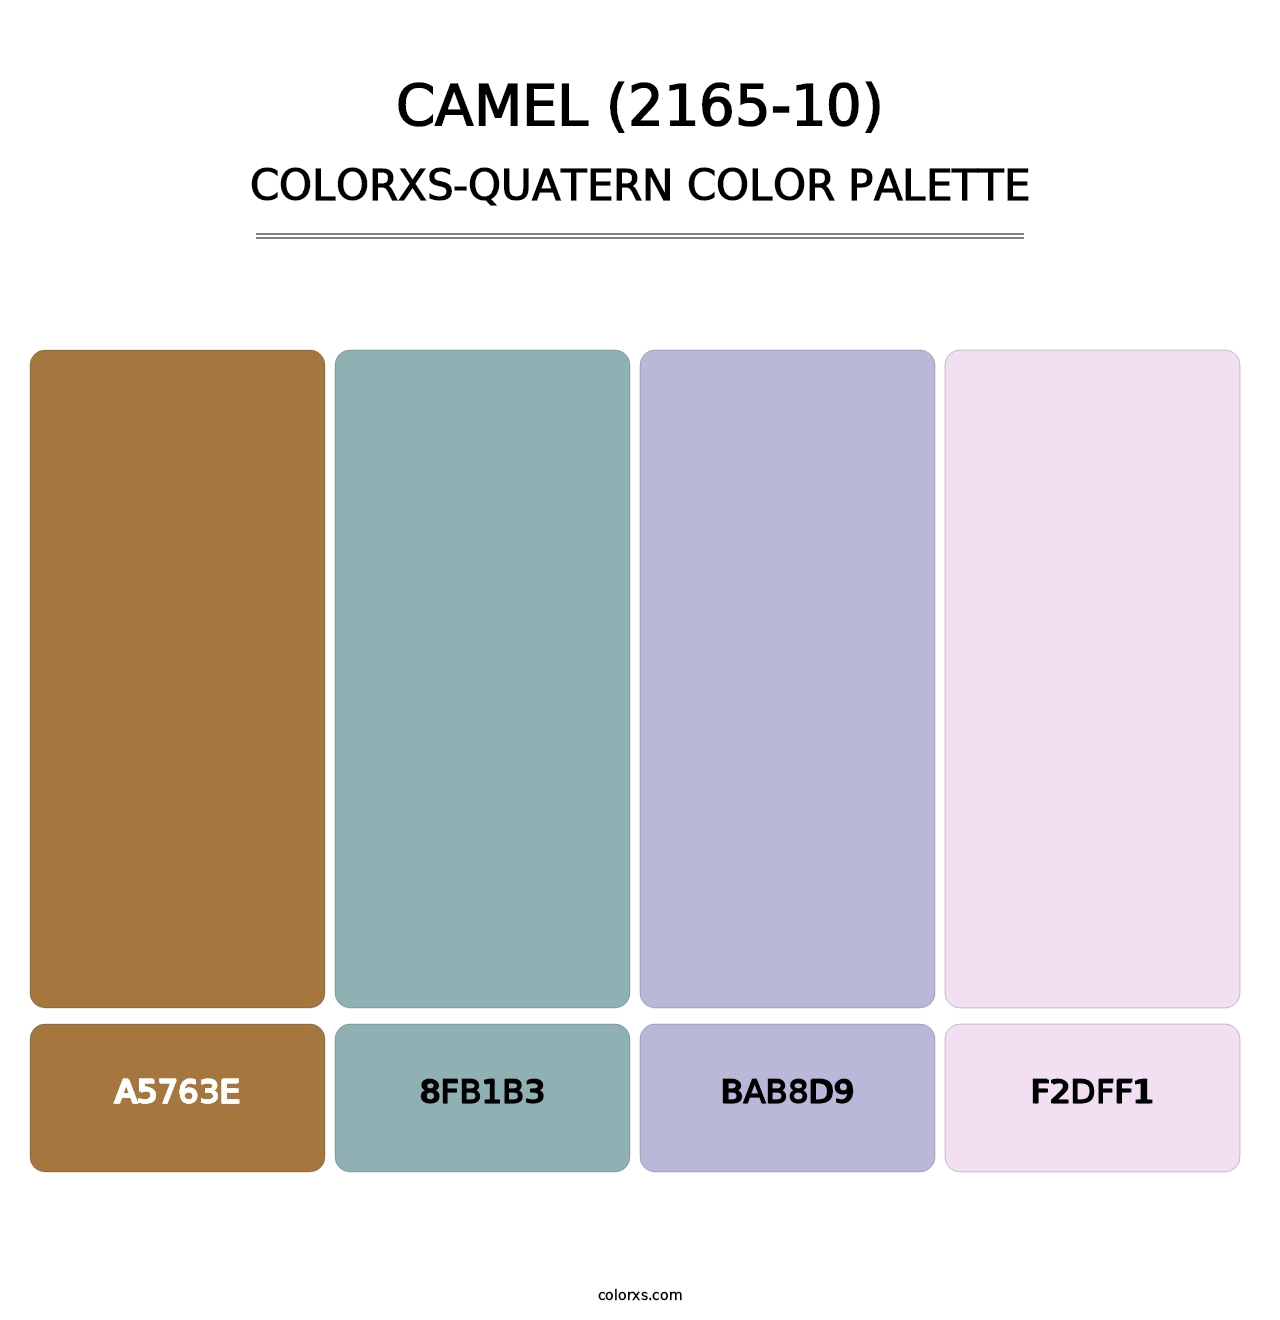 Camel (2165-10) - Colorxs Quatern Palette